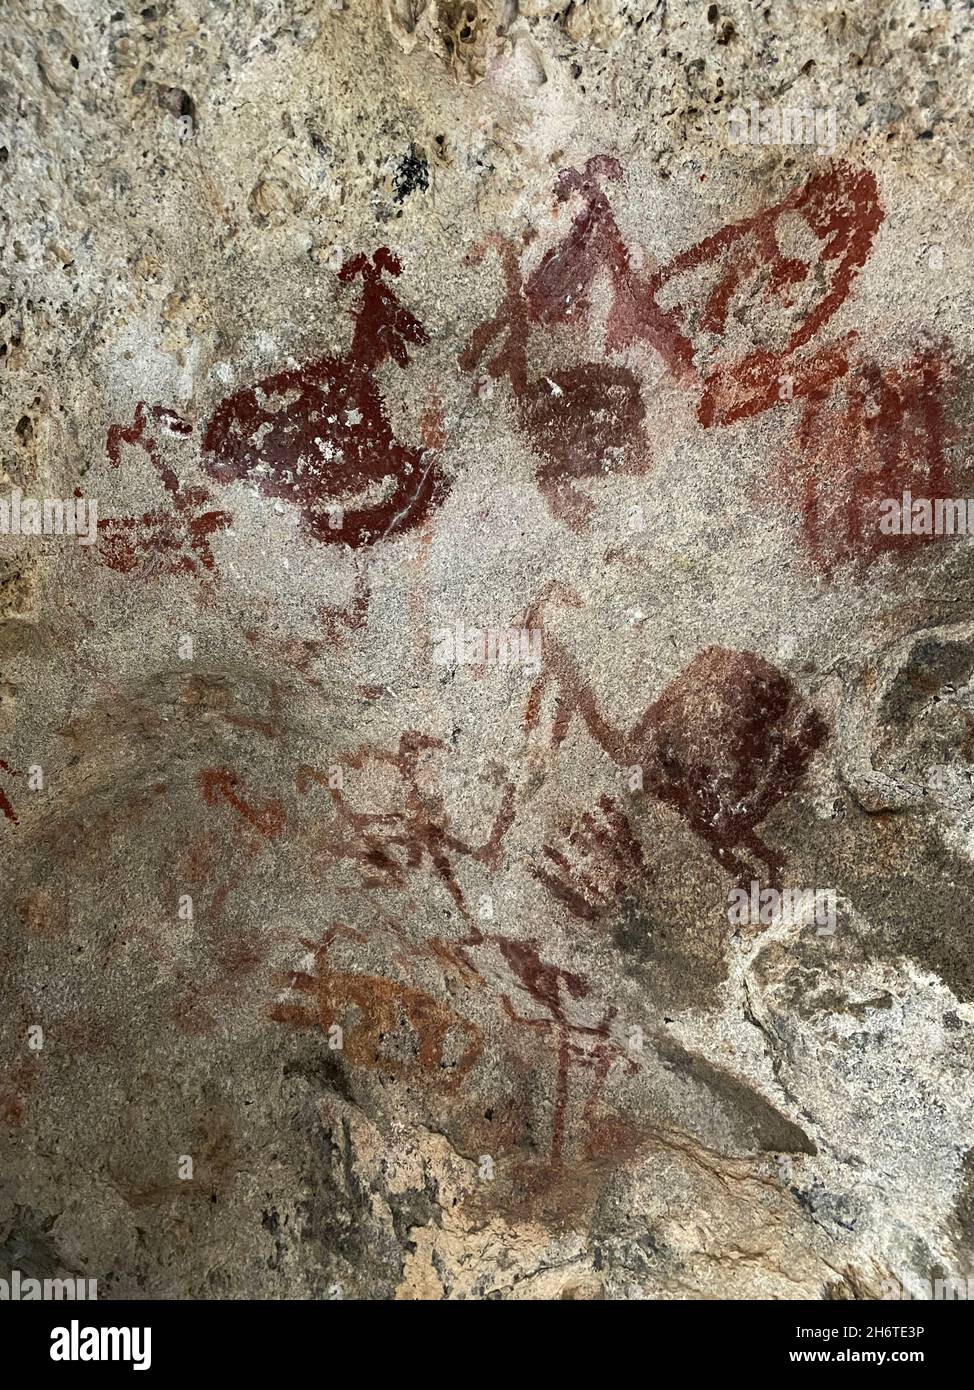 Peintures rupestres préhistoriques dans une grotte, Latmos, Caria Trail Mugla Turquie Banque D'Images